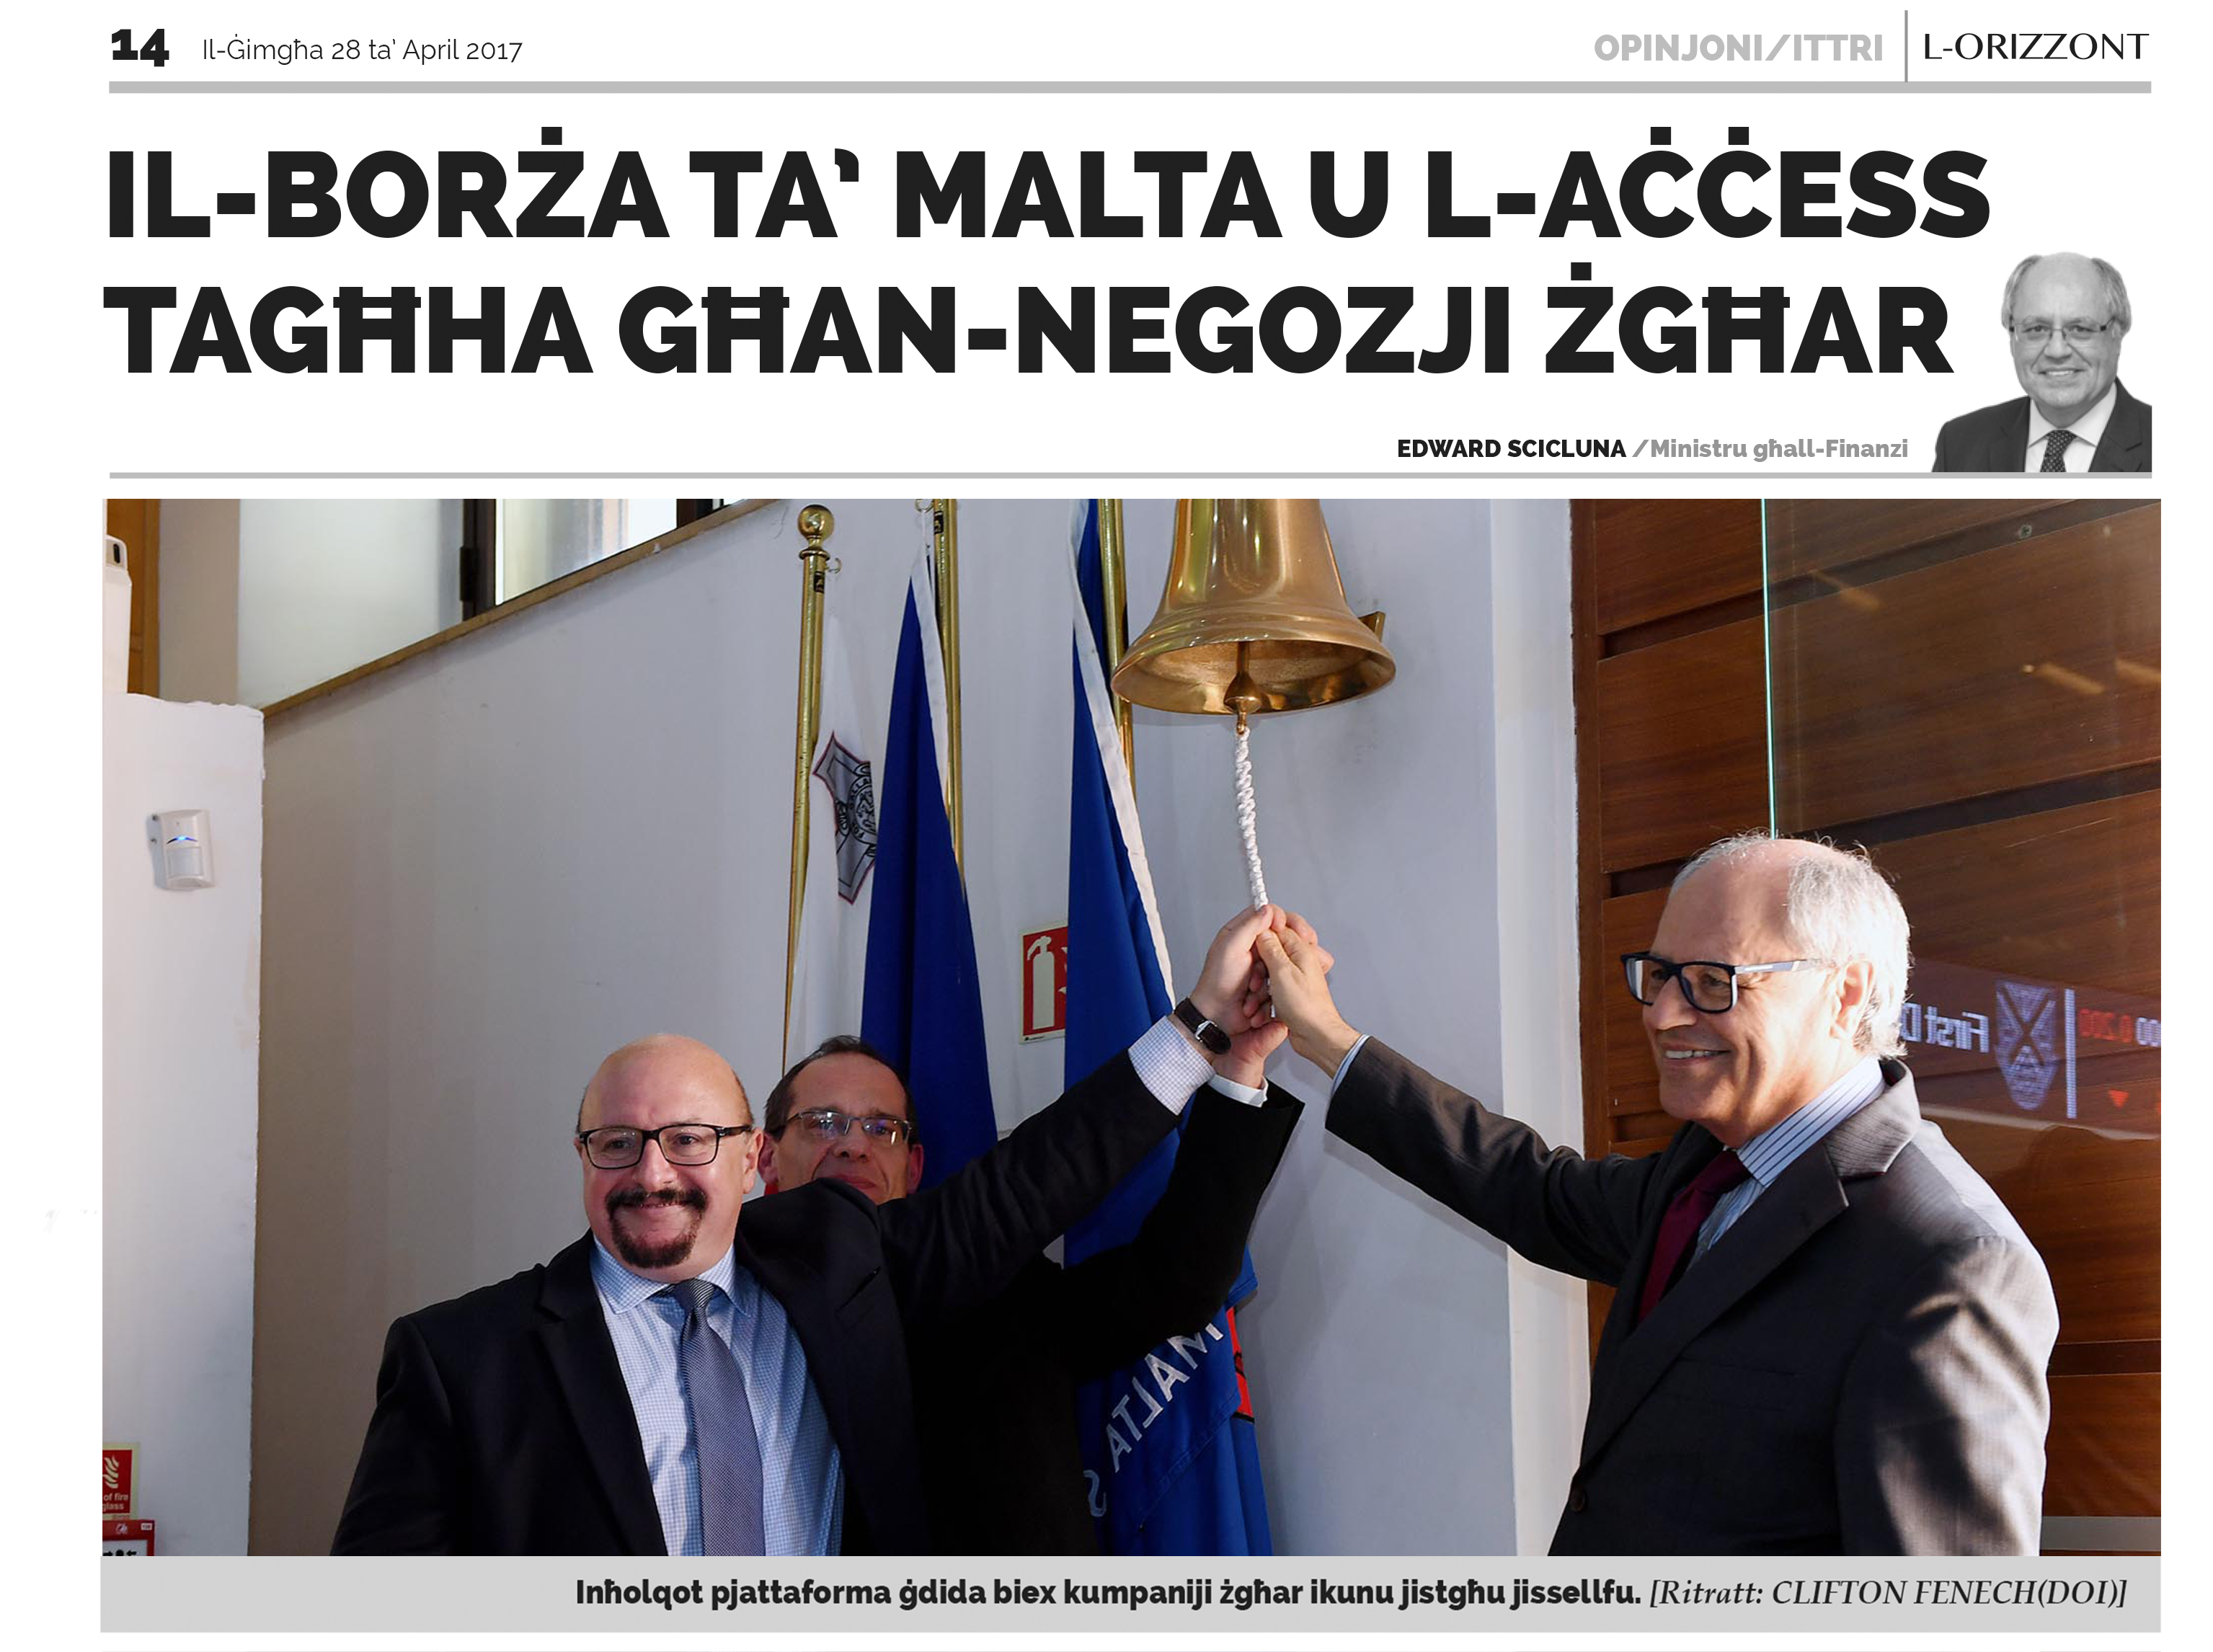 Il-Borża ta’ Malta ssir aktar aċċessibbli għan-negozji ż-żgħar